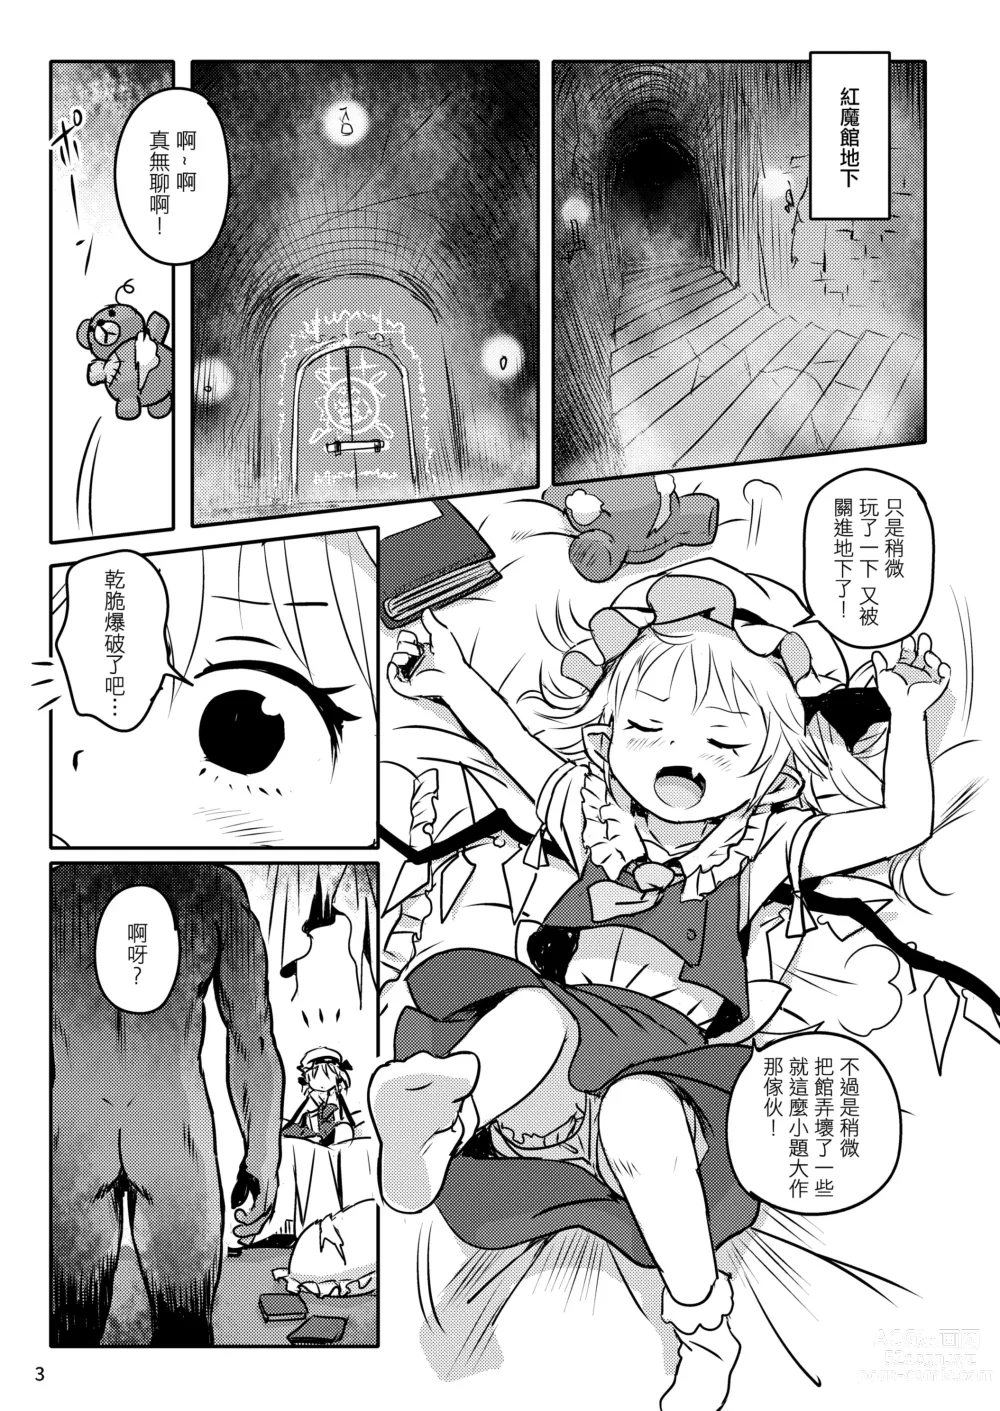 Page 3 of doujinshi 是好孩子吧!芙蘭醬!